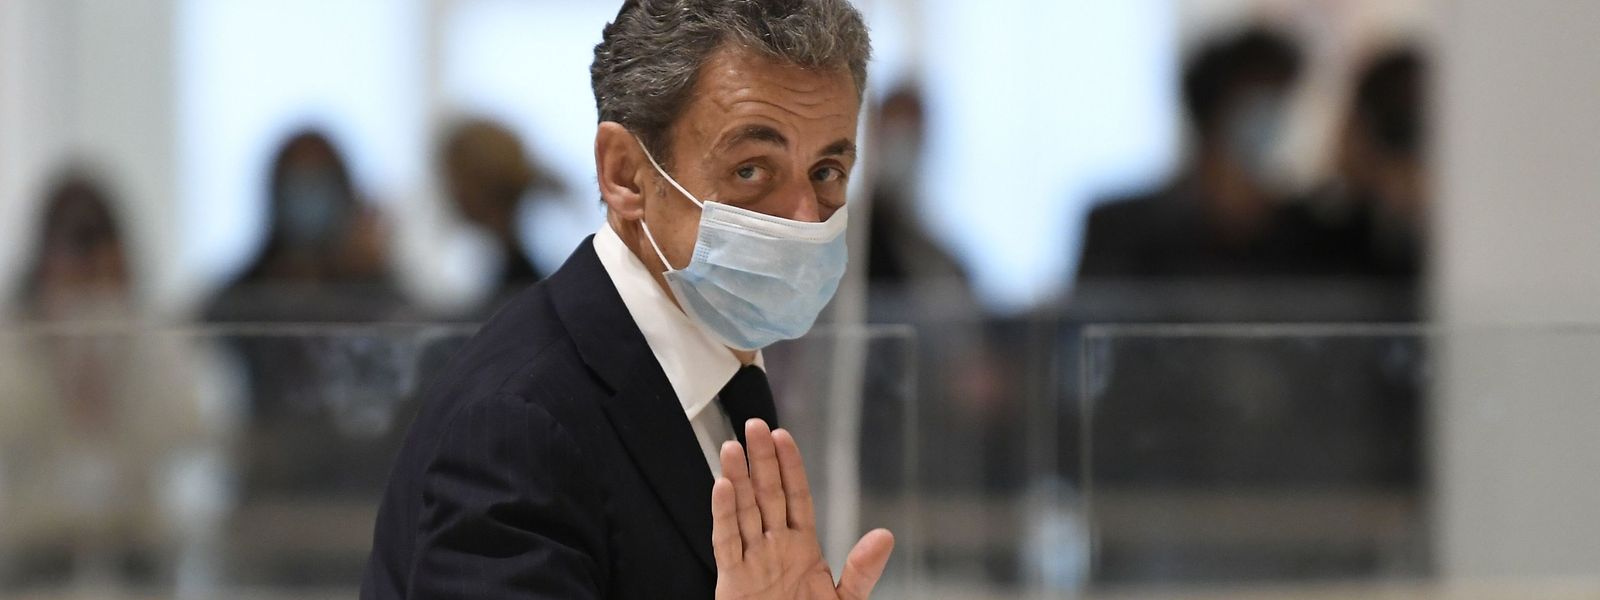 Auf dem Weg aus dem Gerichtssaal winkt der frühere Präsident Niclas Sarkozy den Fotografen zu.